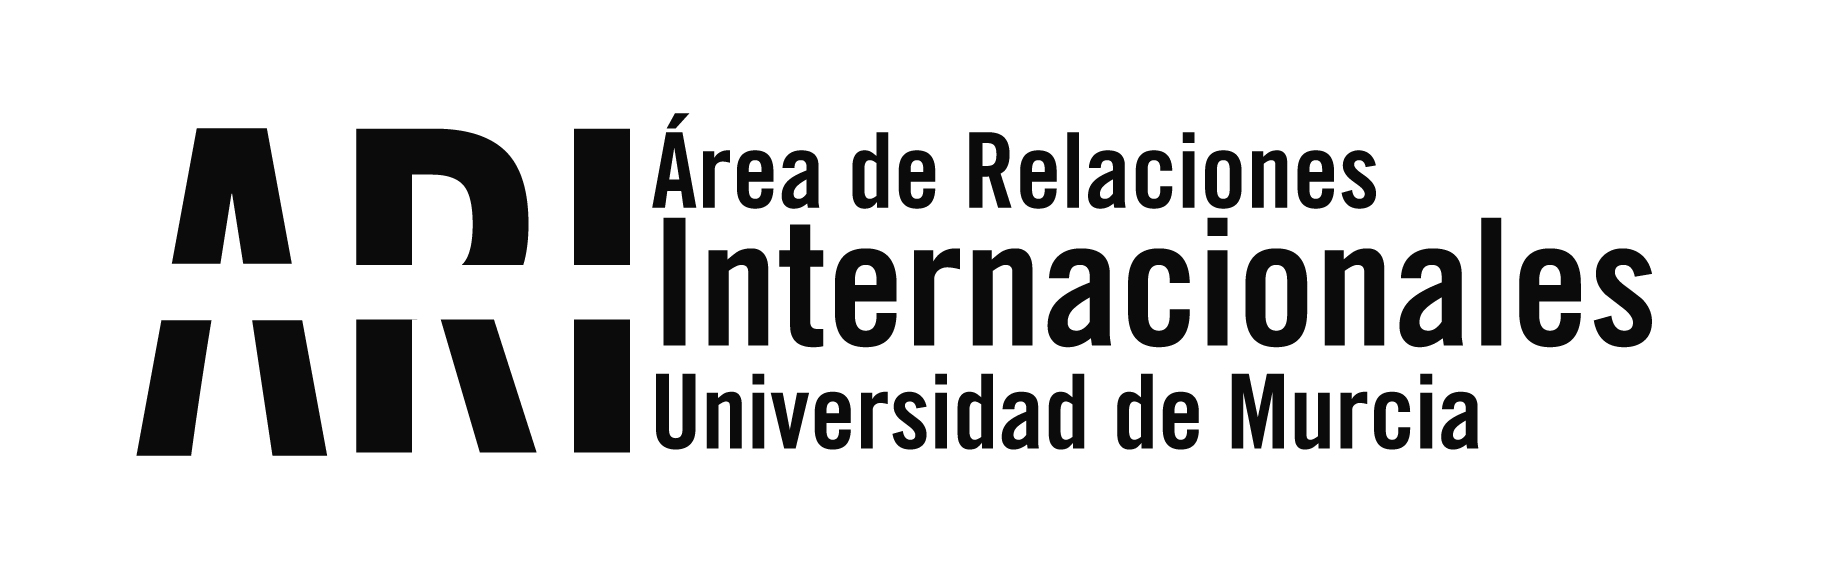 La UMU participa en la charla "Estudiar y Vivir en España" dirigida a estudiantes argentinos - Área de Relaciones Internacionales